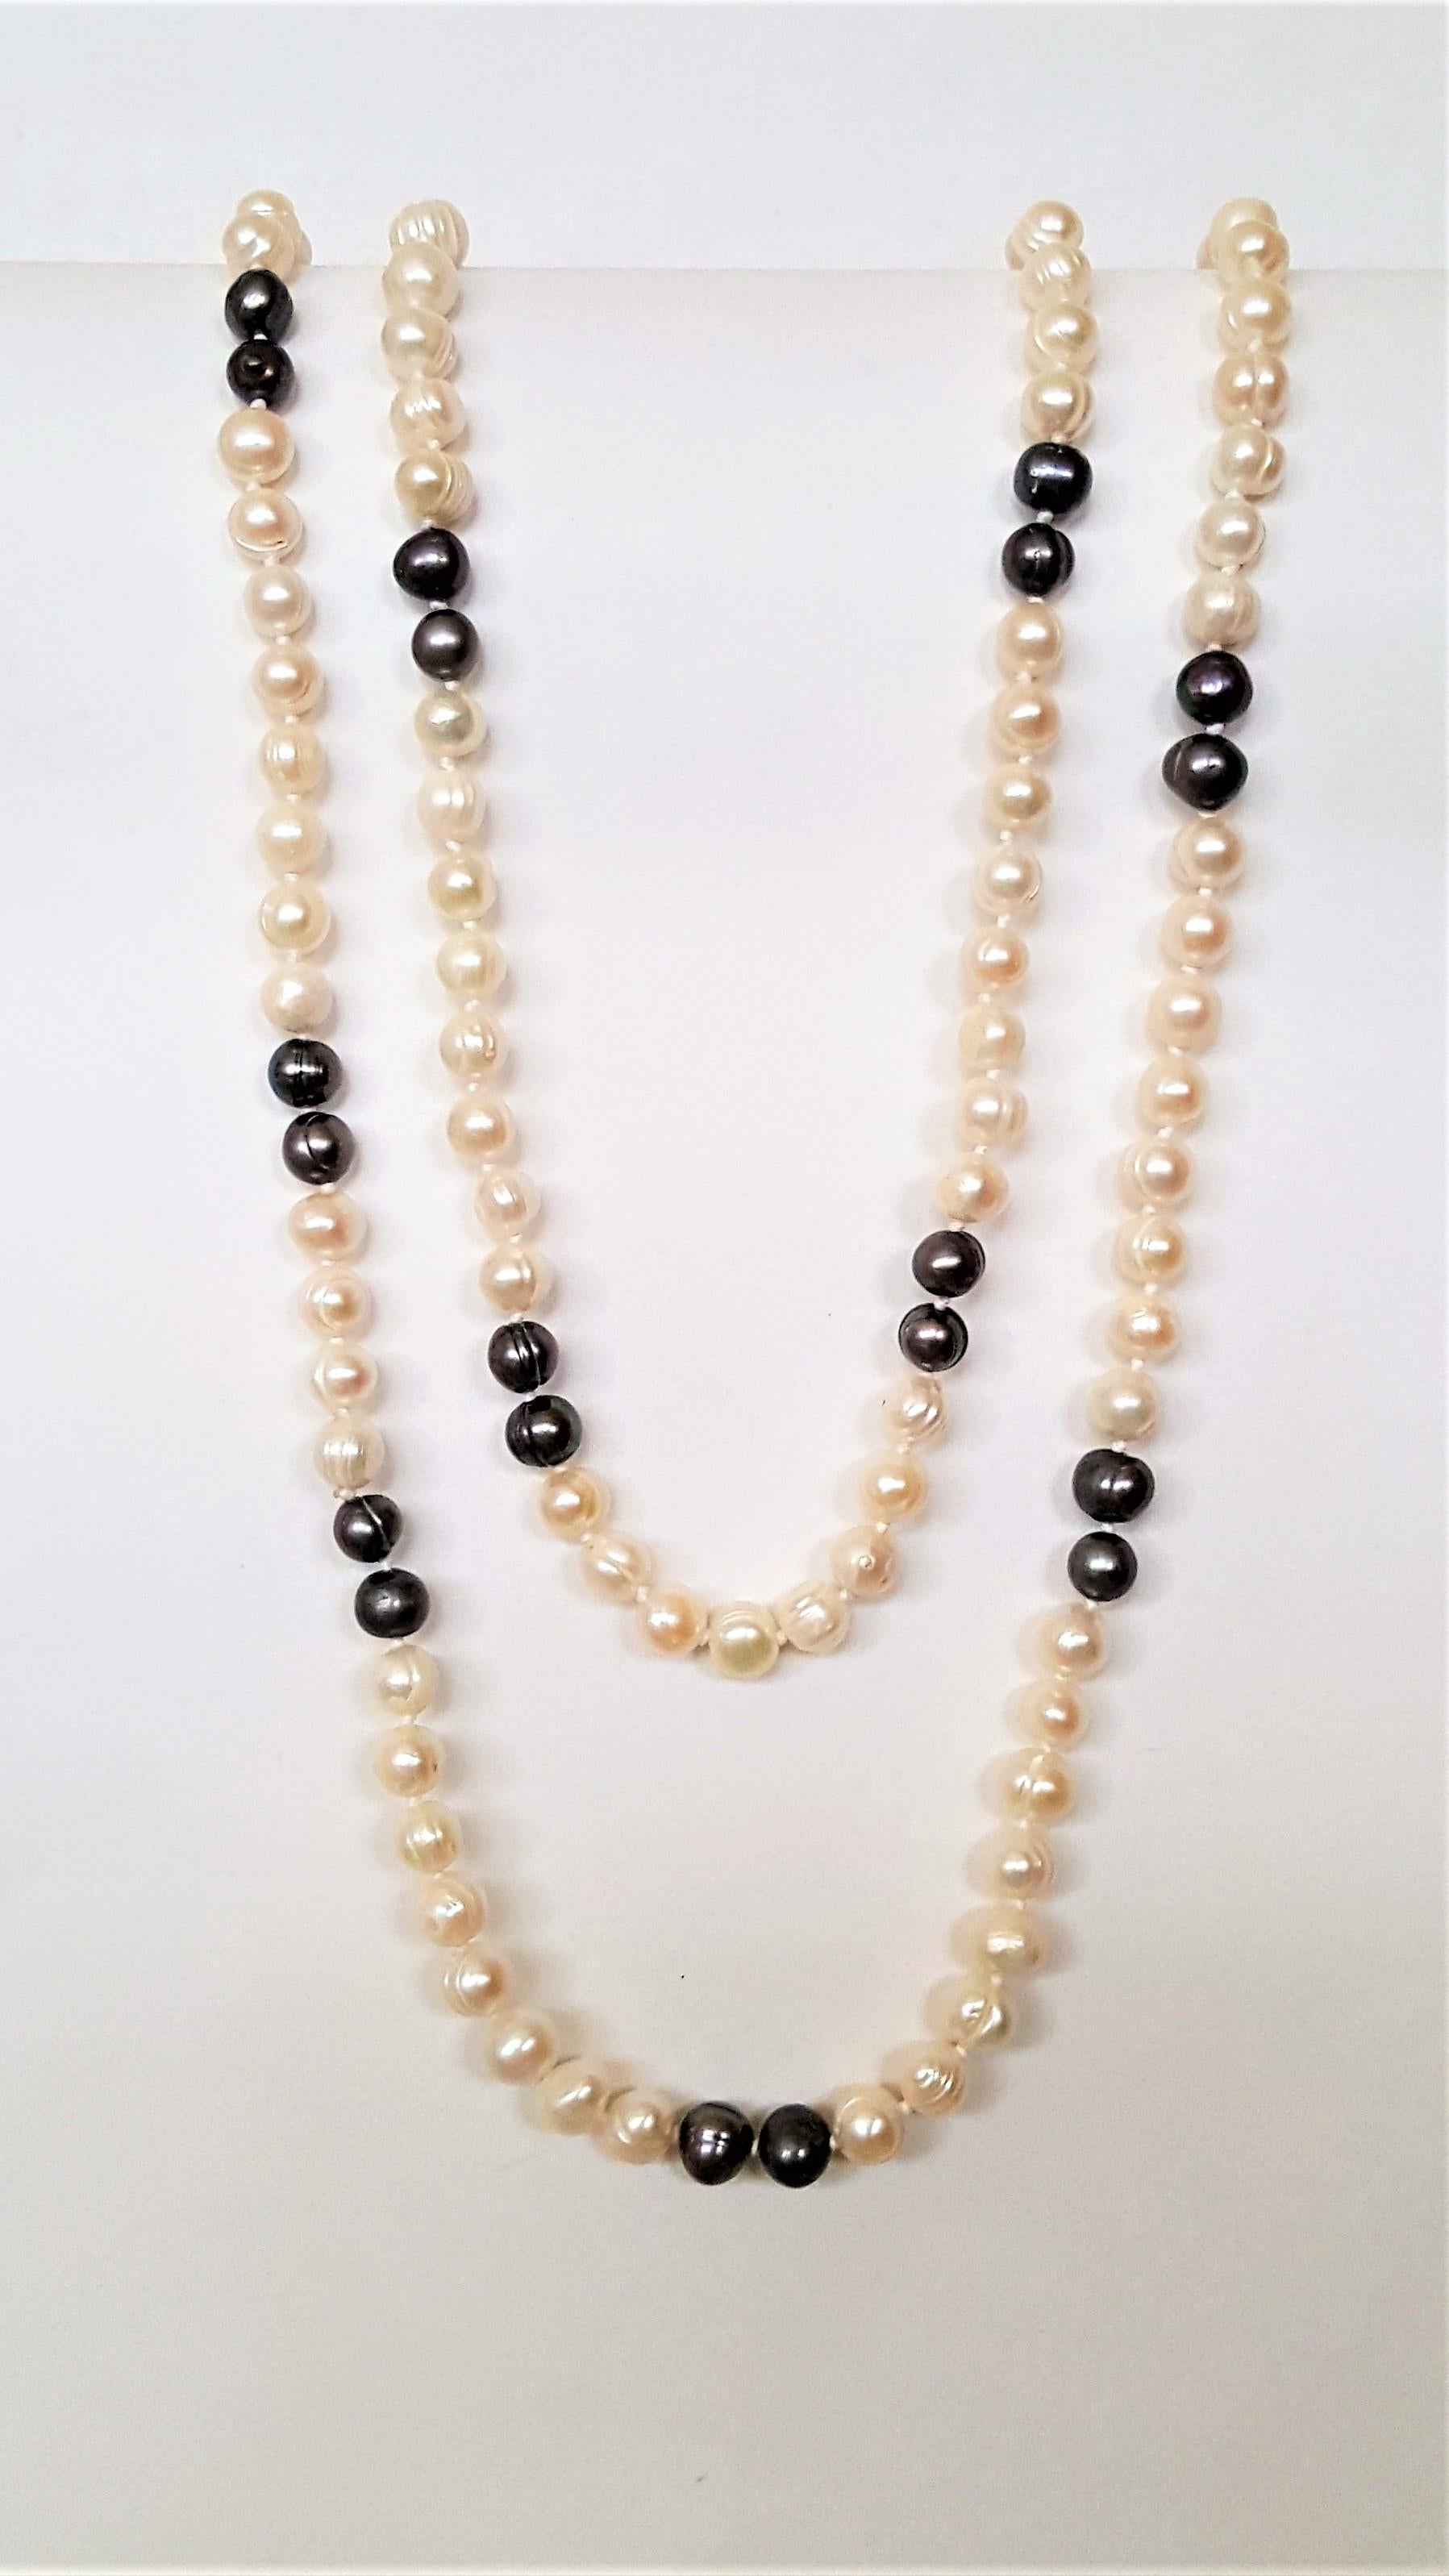 Ein schöner Strang von Süßwasserperlen, der 62 Zoll lang ist, mit weißen und silber/blauen Perlen, die einen sehr guten Glanz und Perlmutt haben. Die Perlen haben einen Durchmesser von 7-8 mm.

Diese Perlen bilden einen wunderschönen Doppelstrang